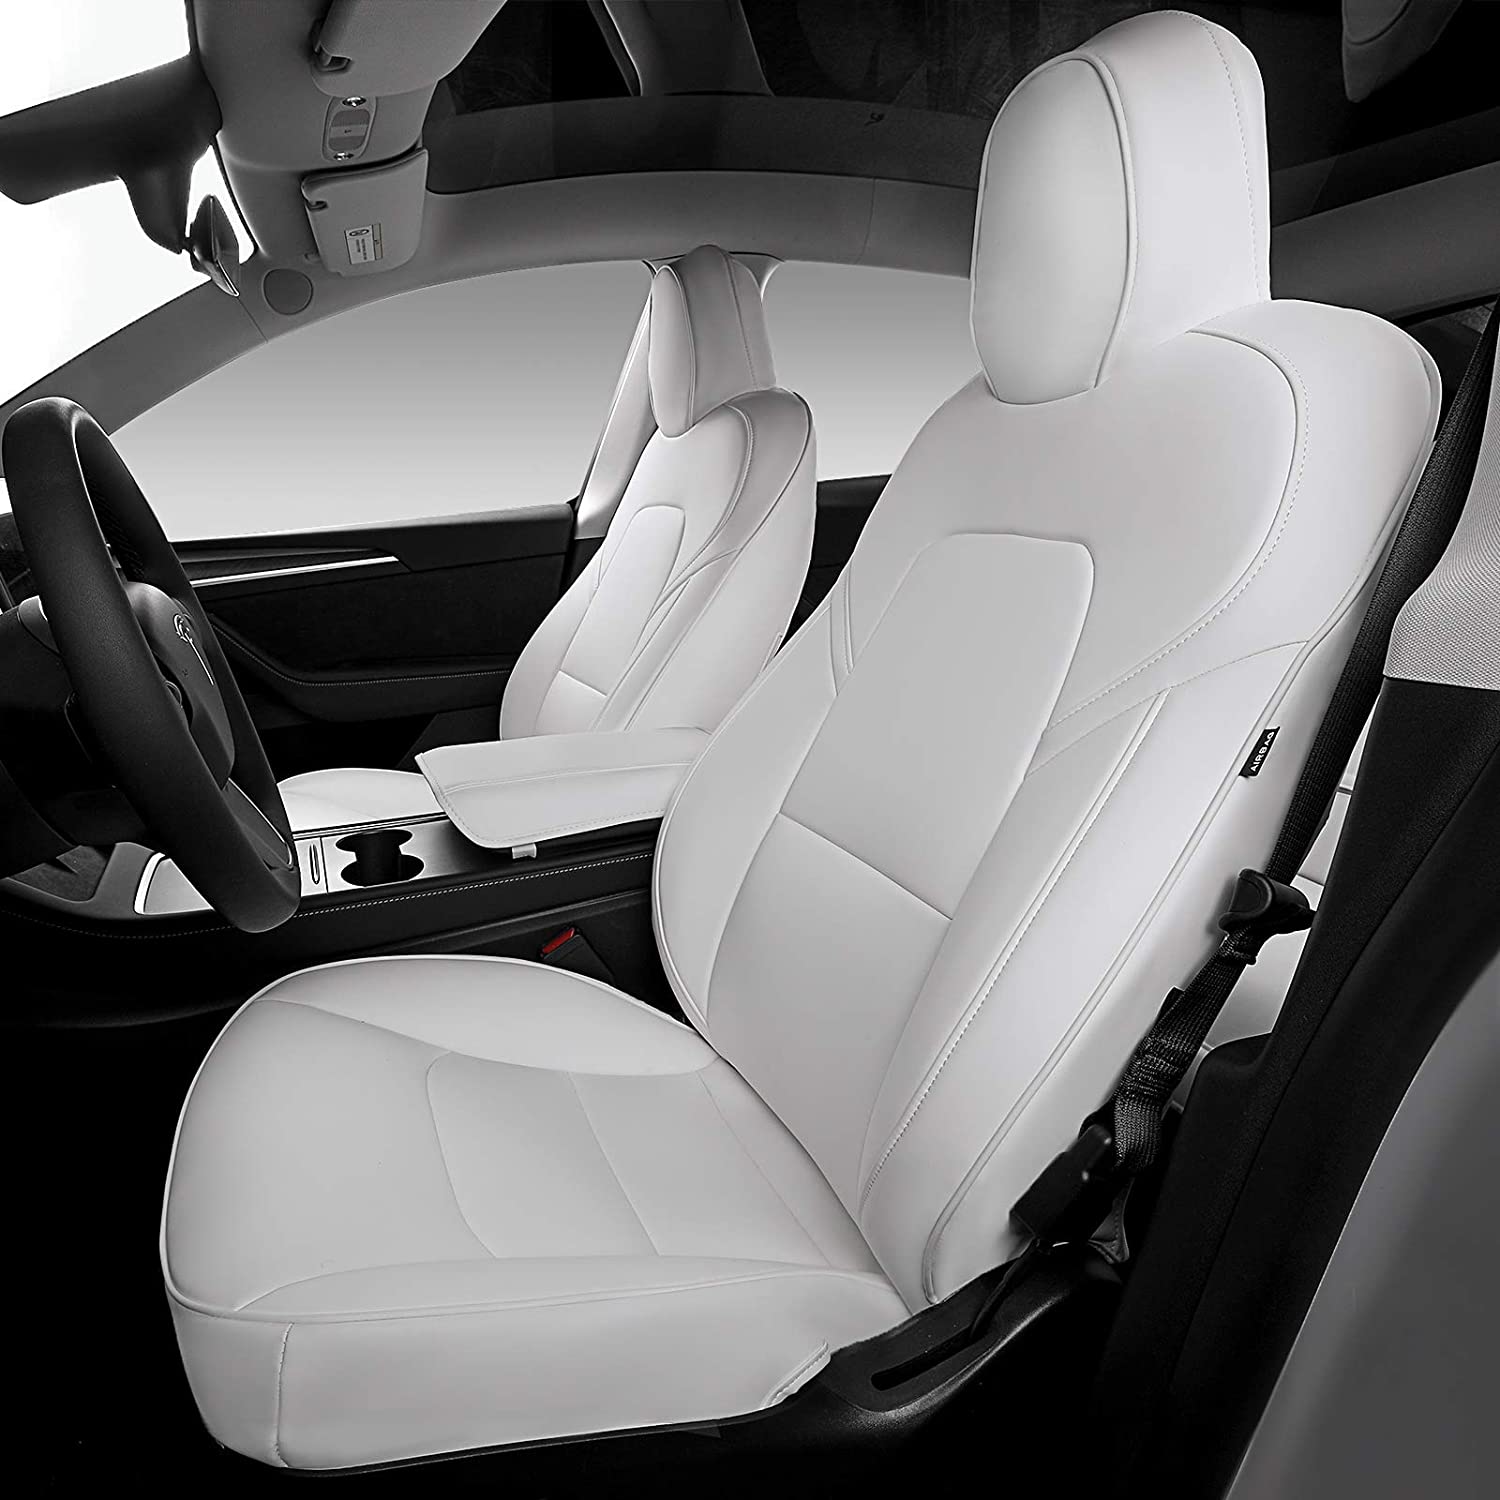 Cuscino sedile posteriore anteriore e schienale per Tesla Model 3